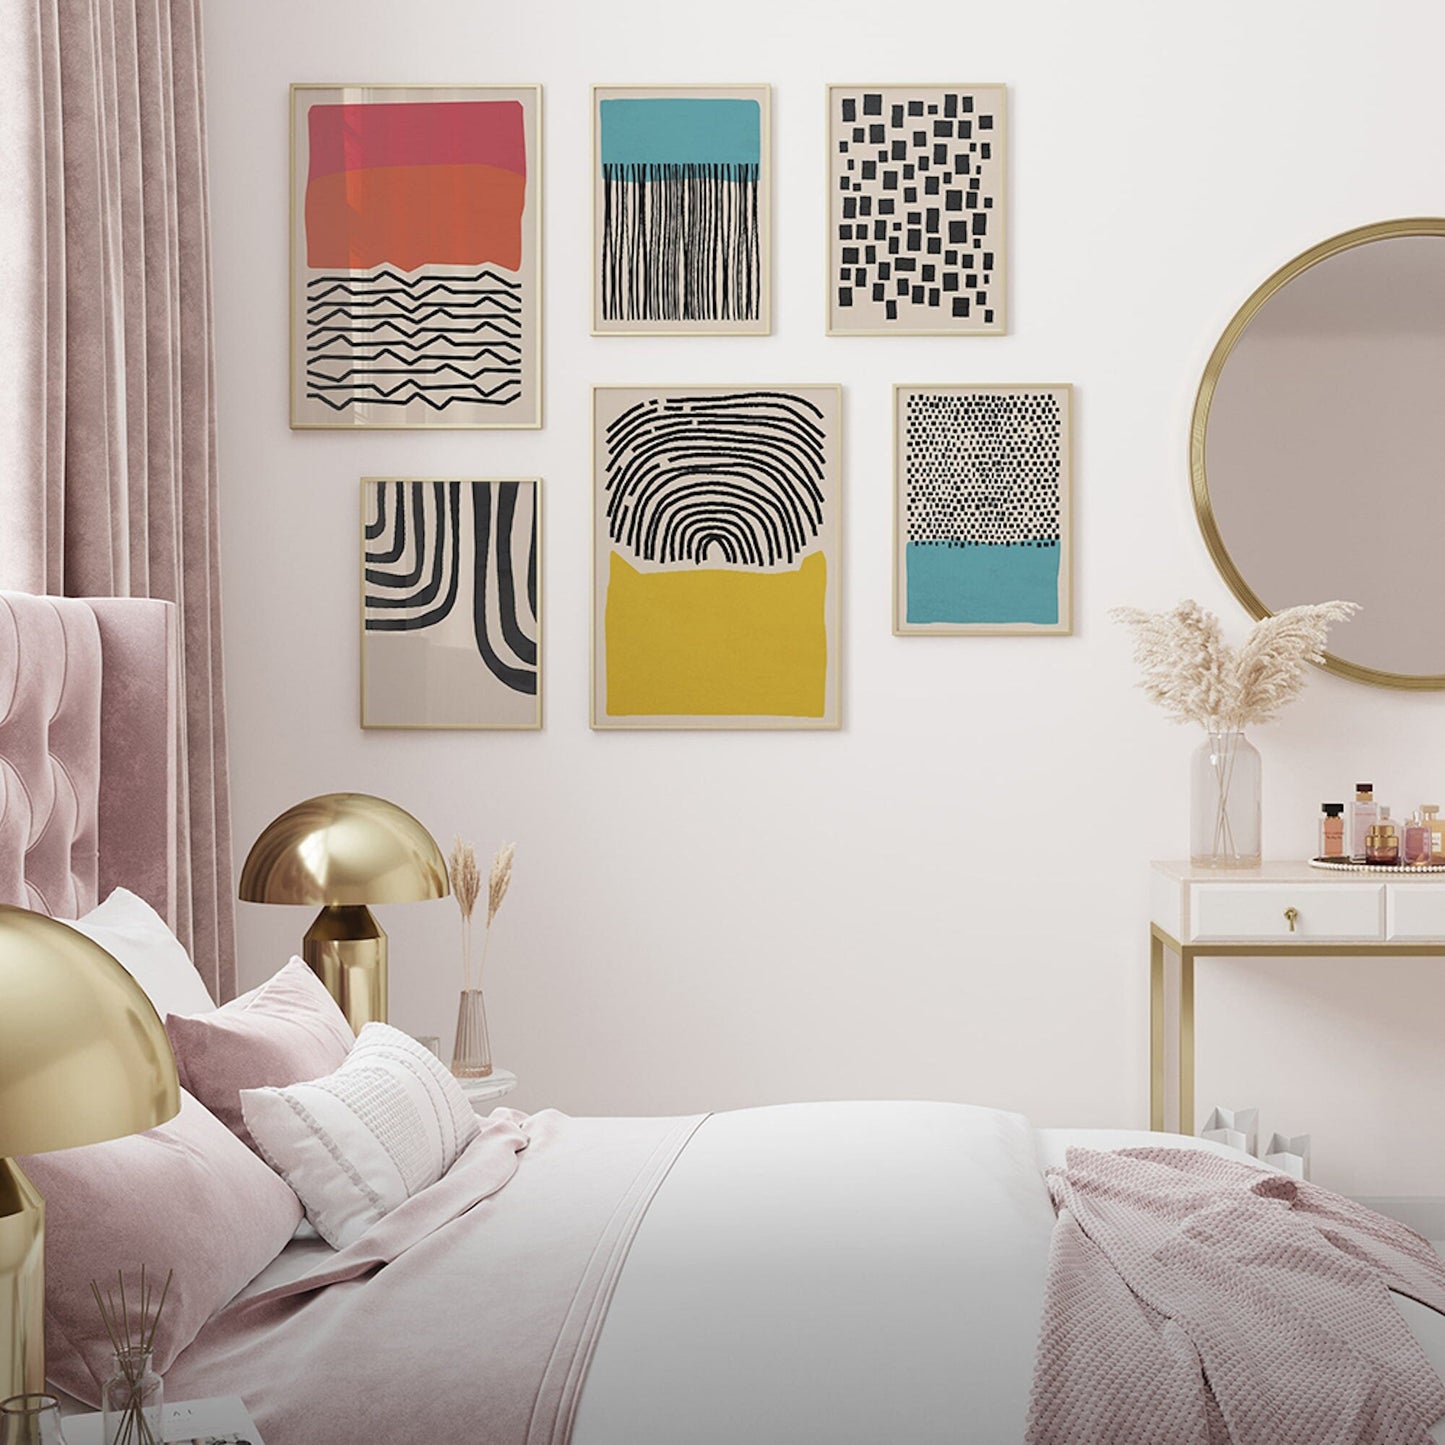 Poster Linien Abstrakt Formen | Bilder Wohnzimmer | Wandbilder Schlafzimmer | Deko Print ohne Rahmen | Bilder Set Kunstdruck